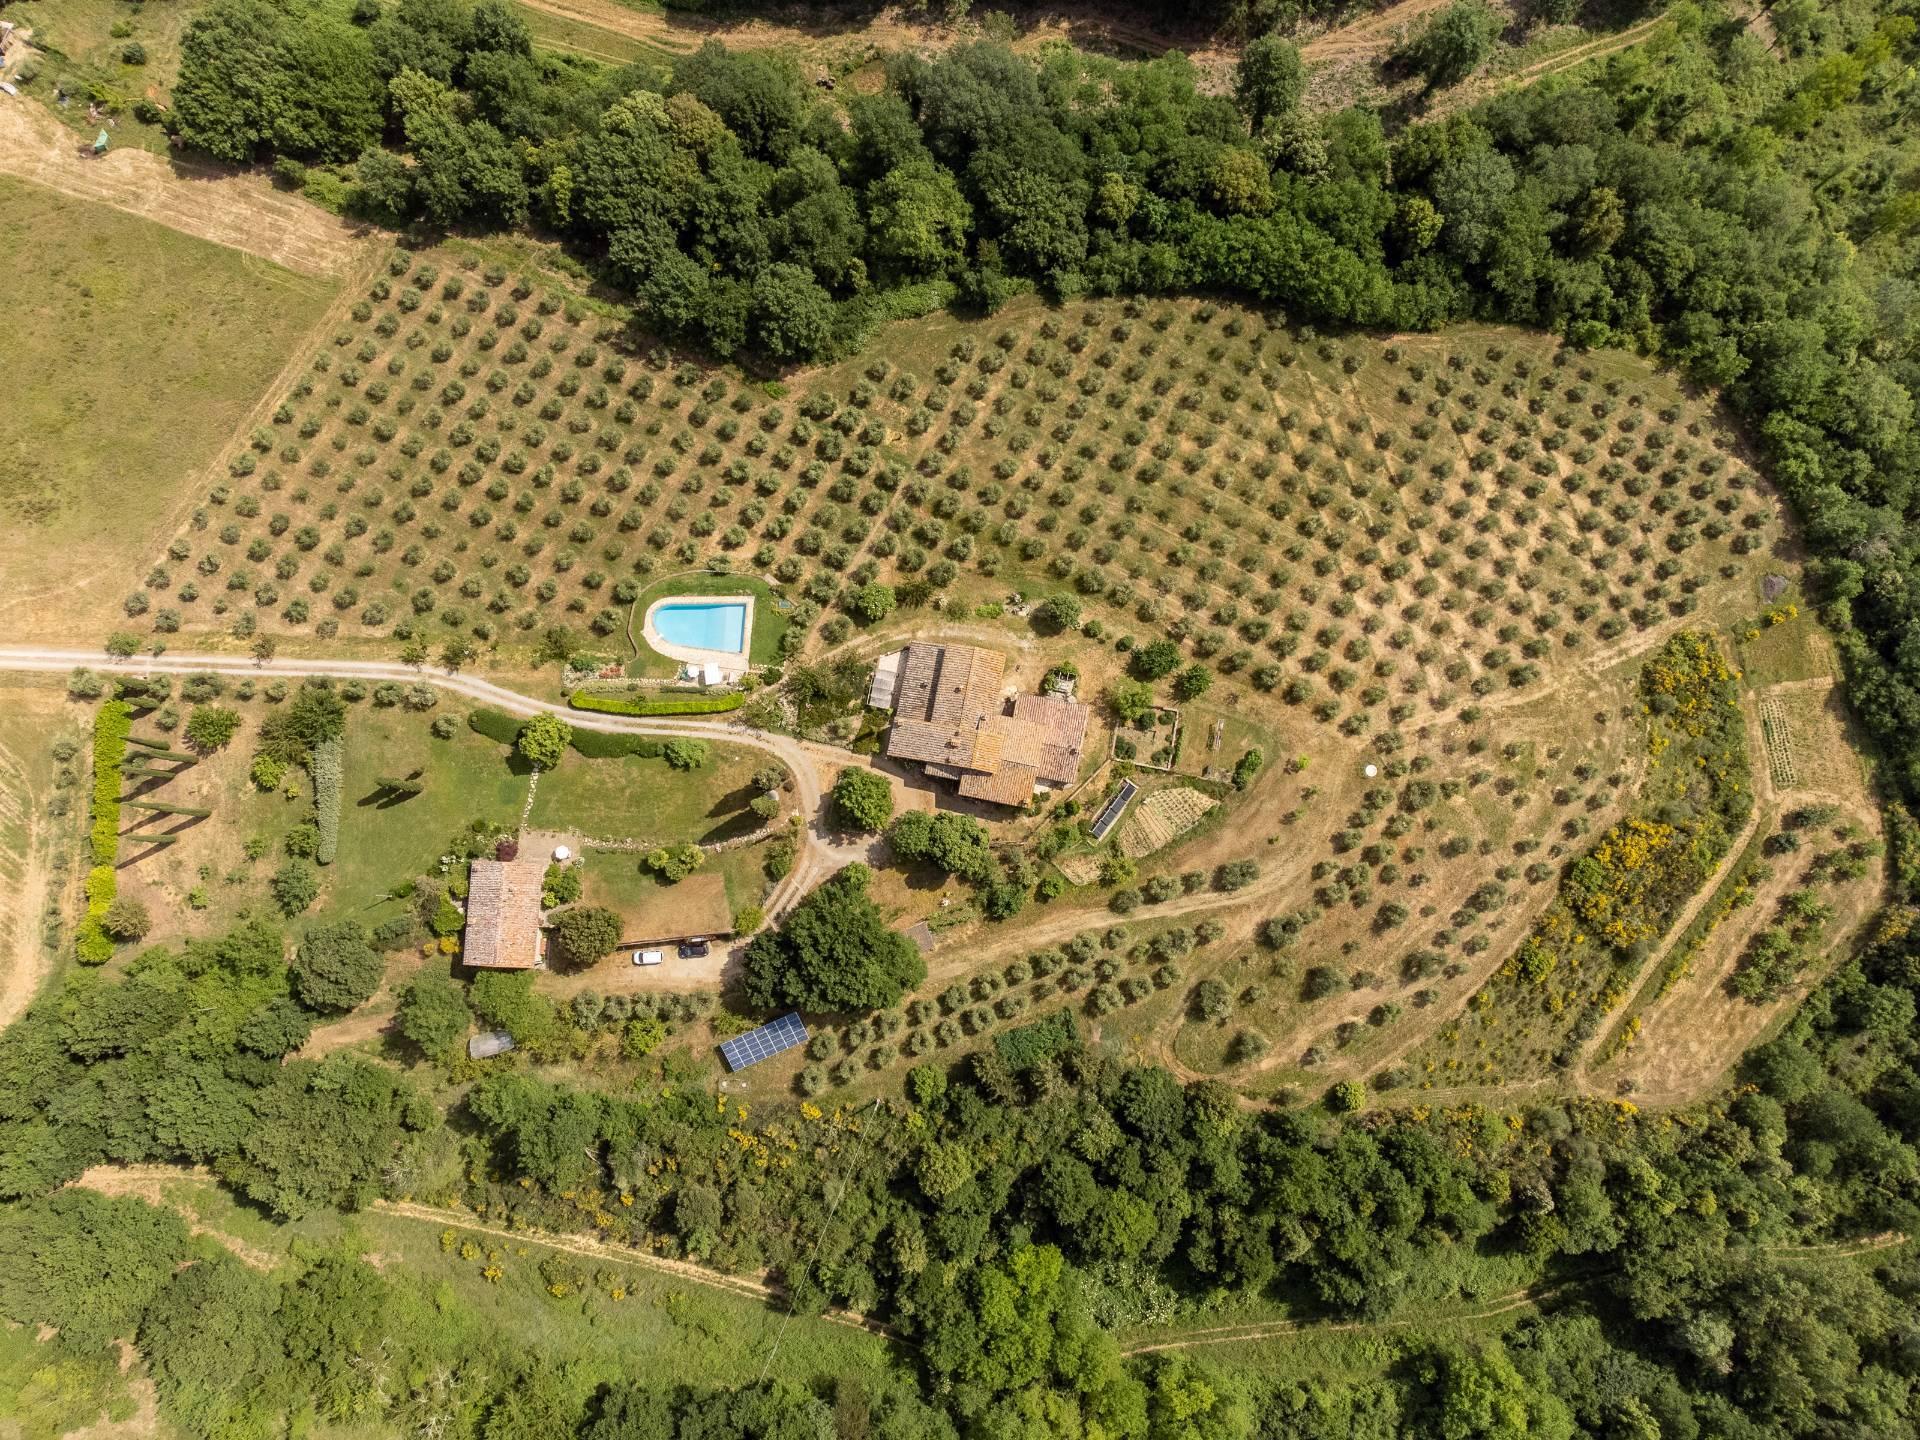 Wunderschönes Bauernhaus im Chianti Gebiet - 36